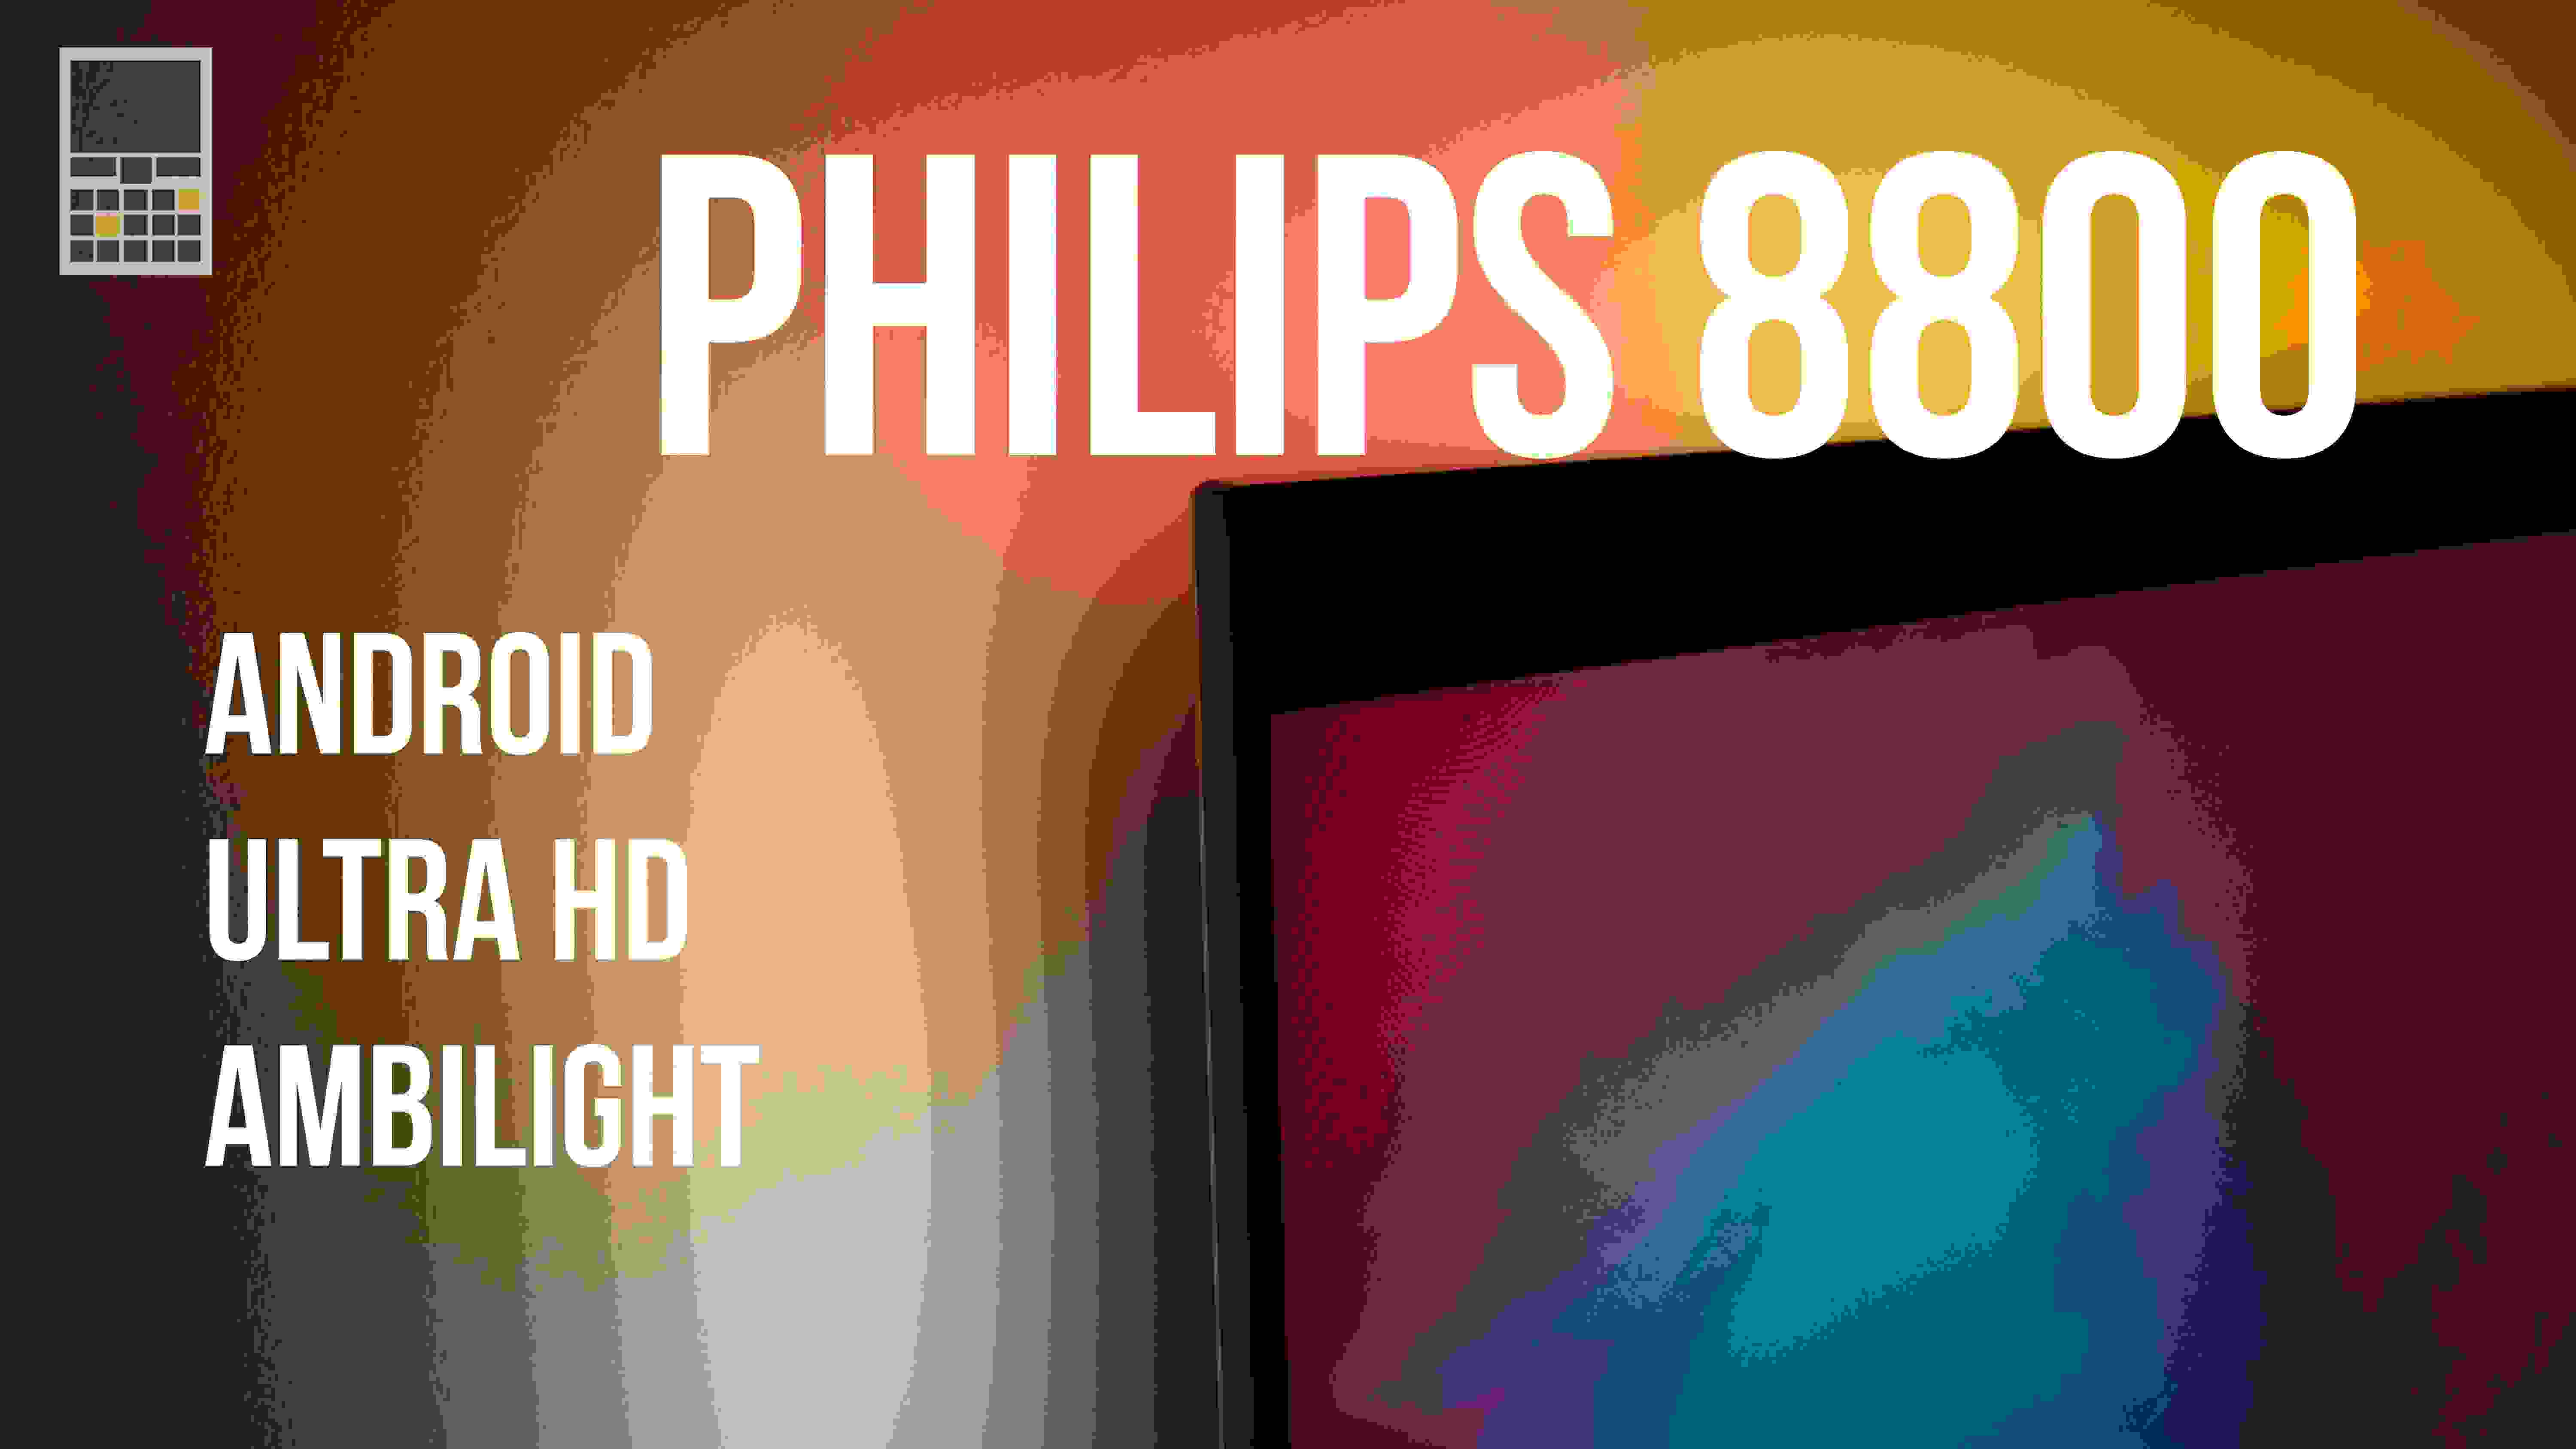 Philips 8800